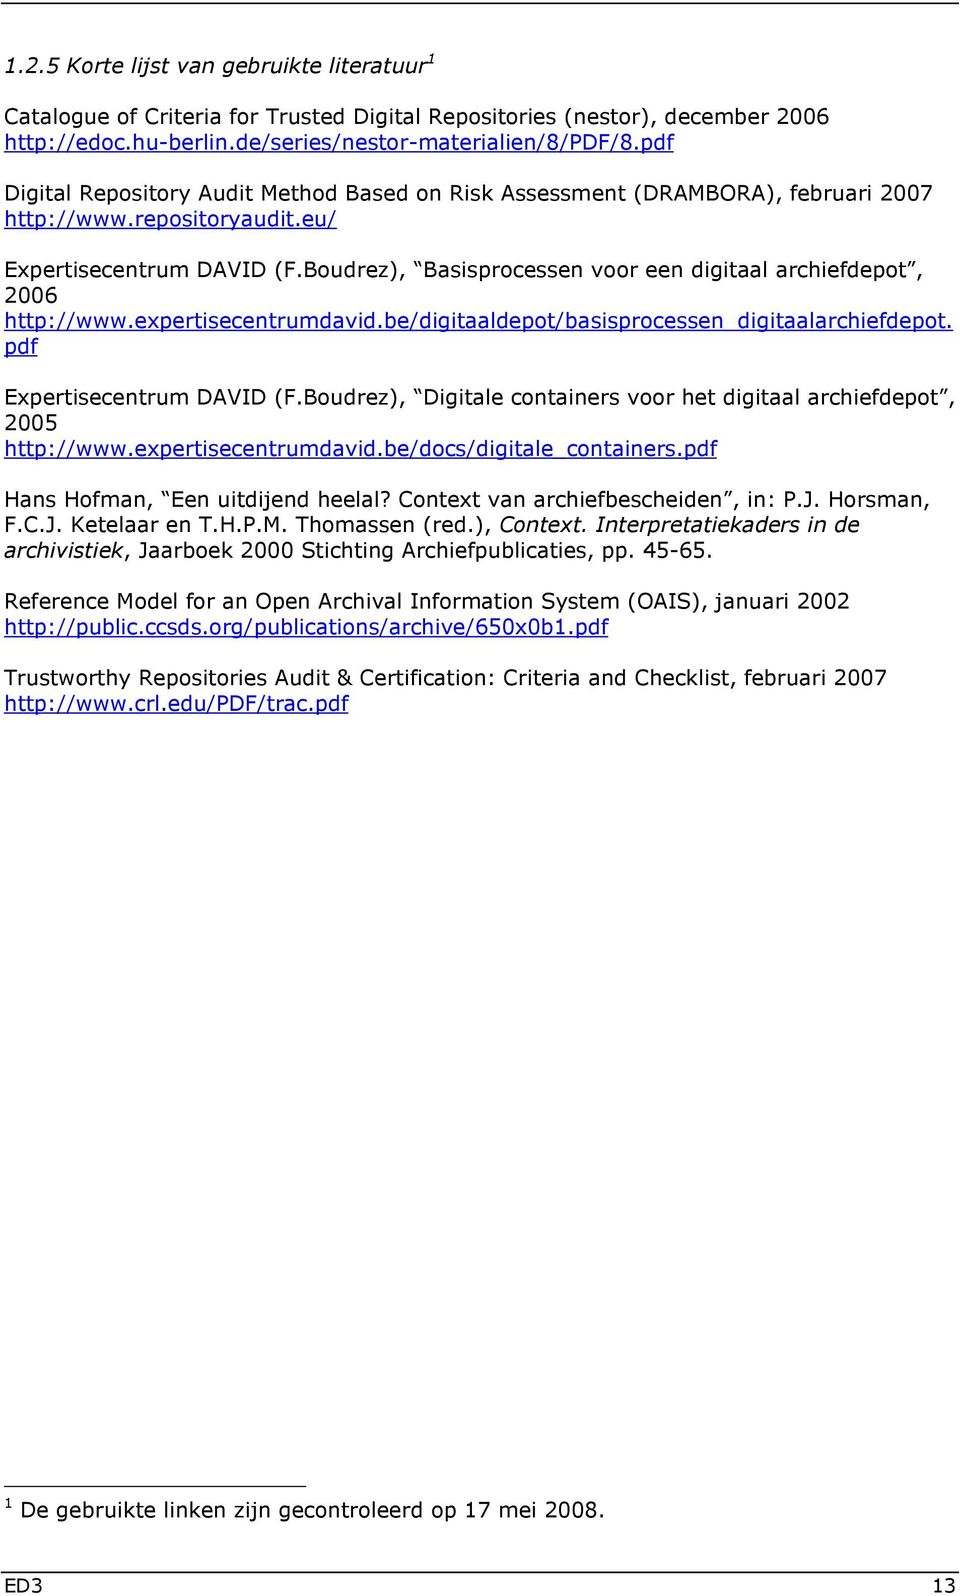 Boudrez), Basisprocessen voor een digitaal archiefdepot, 2006 http://www.expertisecentrumdavid.be/digitaaldepot/basisprocessen_digitaalarchiefdepot. pdf Expertisecentrum DAVID (F.